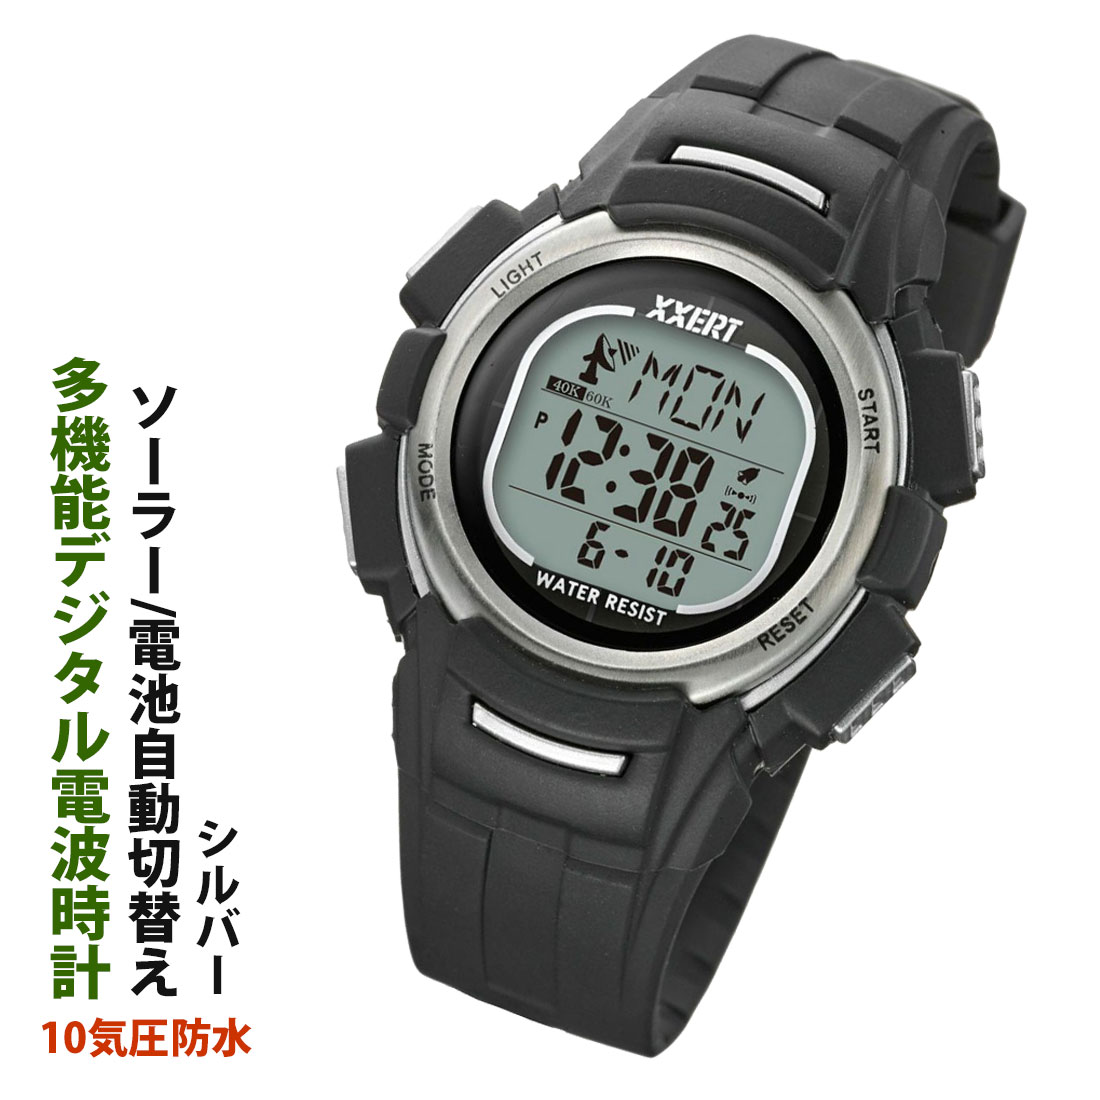 (在庫限りで終了) 電波腕時計 XXERT(エグザート) 　ソーラー駆動/電池駆動の自動切り替えで電池長持ち デジタル腕時計 シルバー  XXW-503S 送料無料